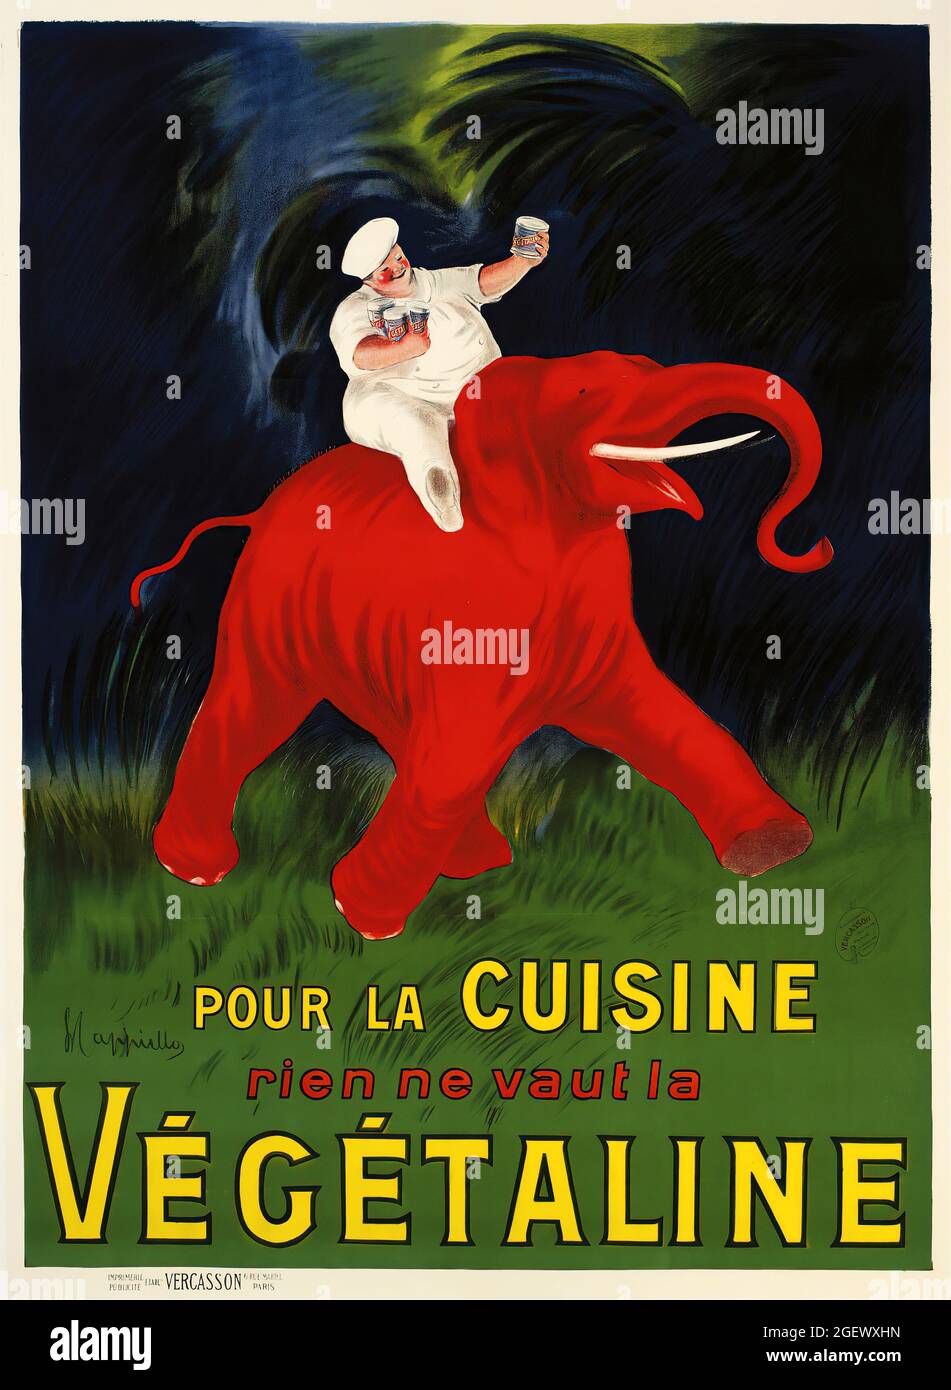 Végétaline, pour la cuisine, feat un uomo su un elefante rosso. Poster d'epoca - Leonetto Cappiello. Poster pubblicitario. Foto Stock